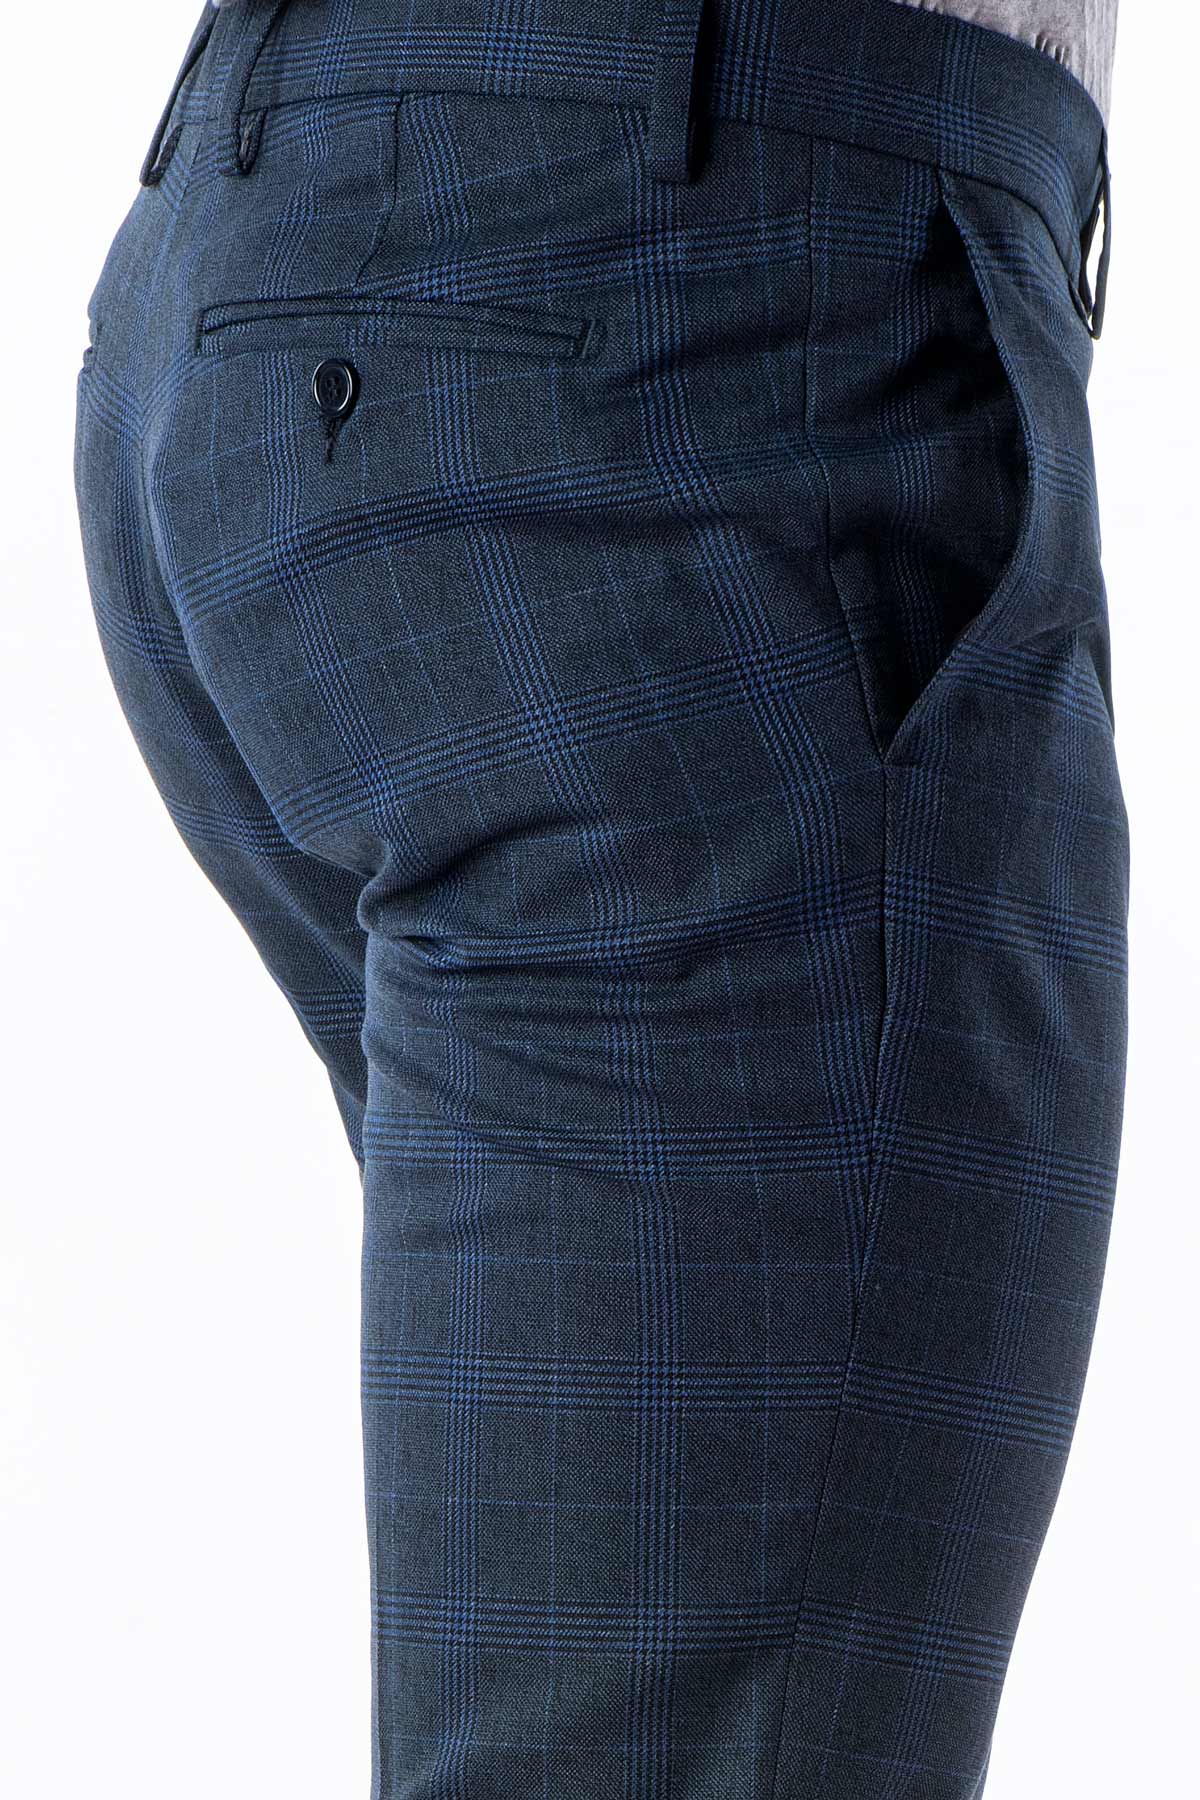 Pantalone stretch invernale quadri blu